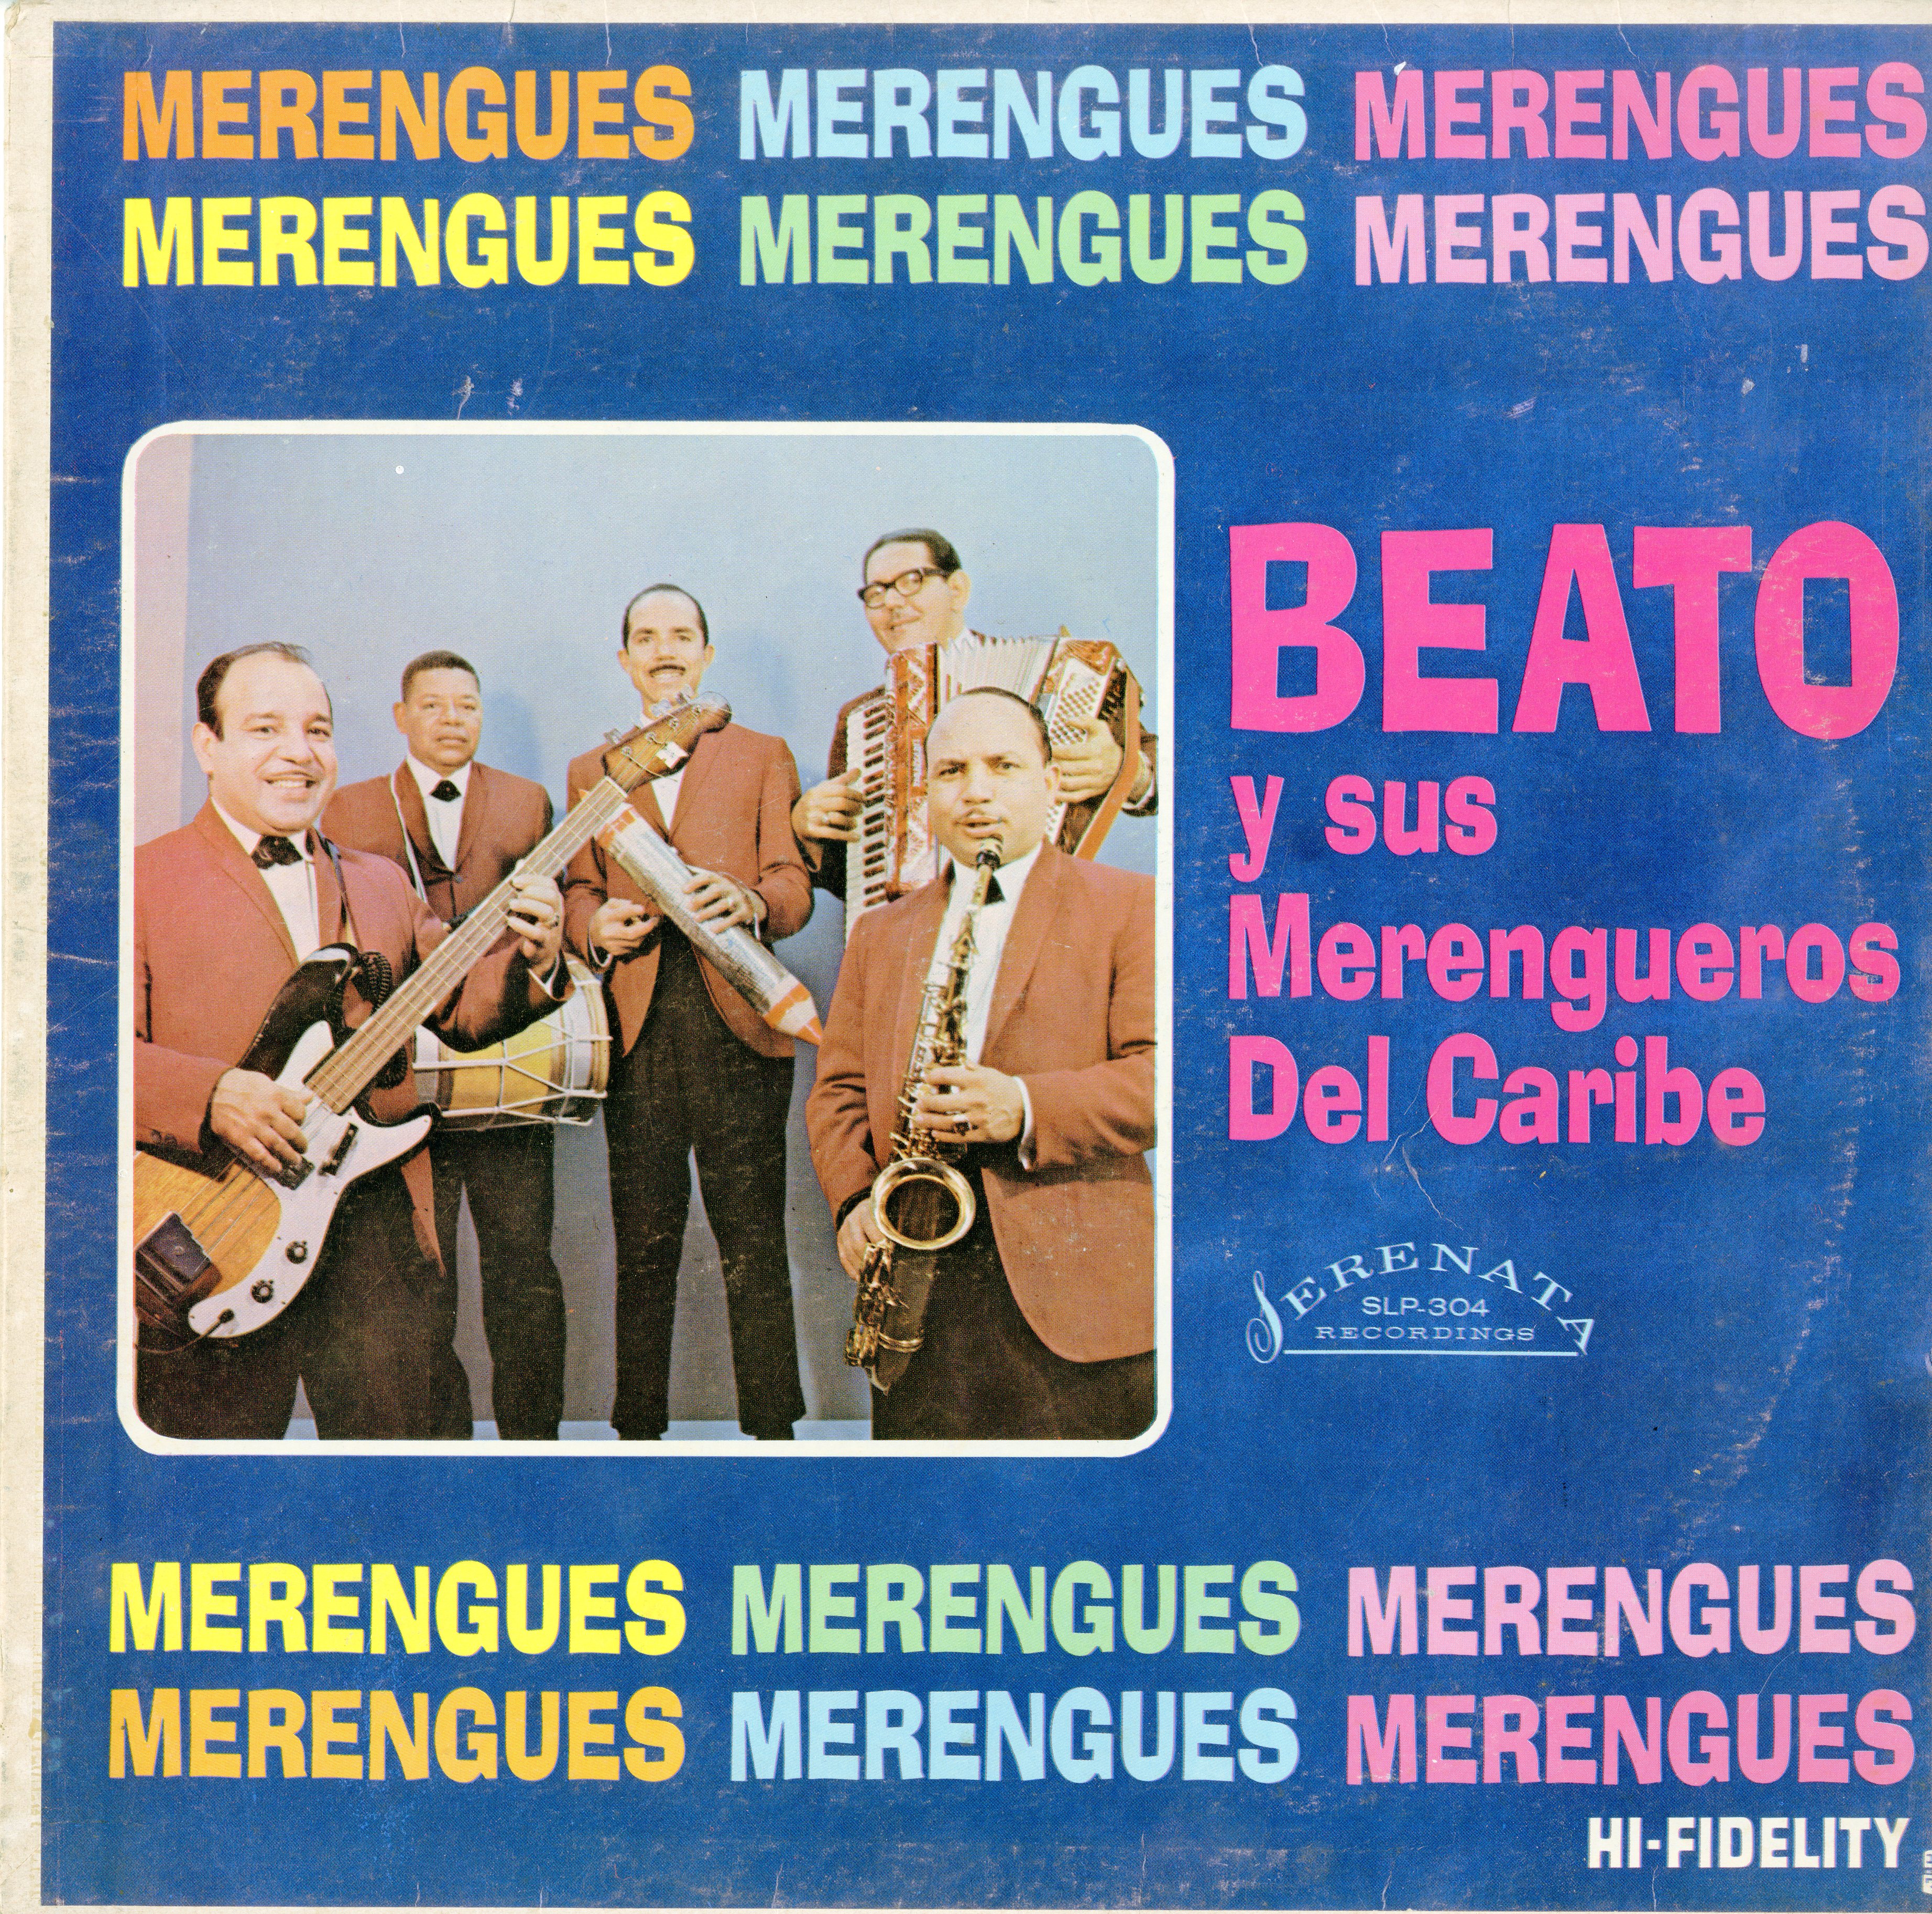 Beato y sus Merengueros Del Caribe LP Album Cover, 1960s